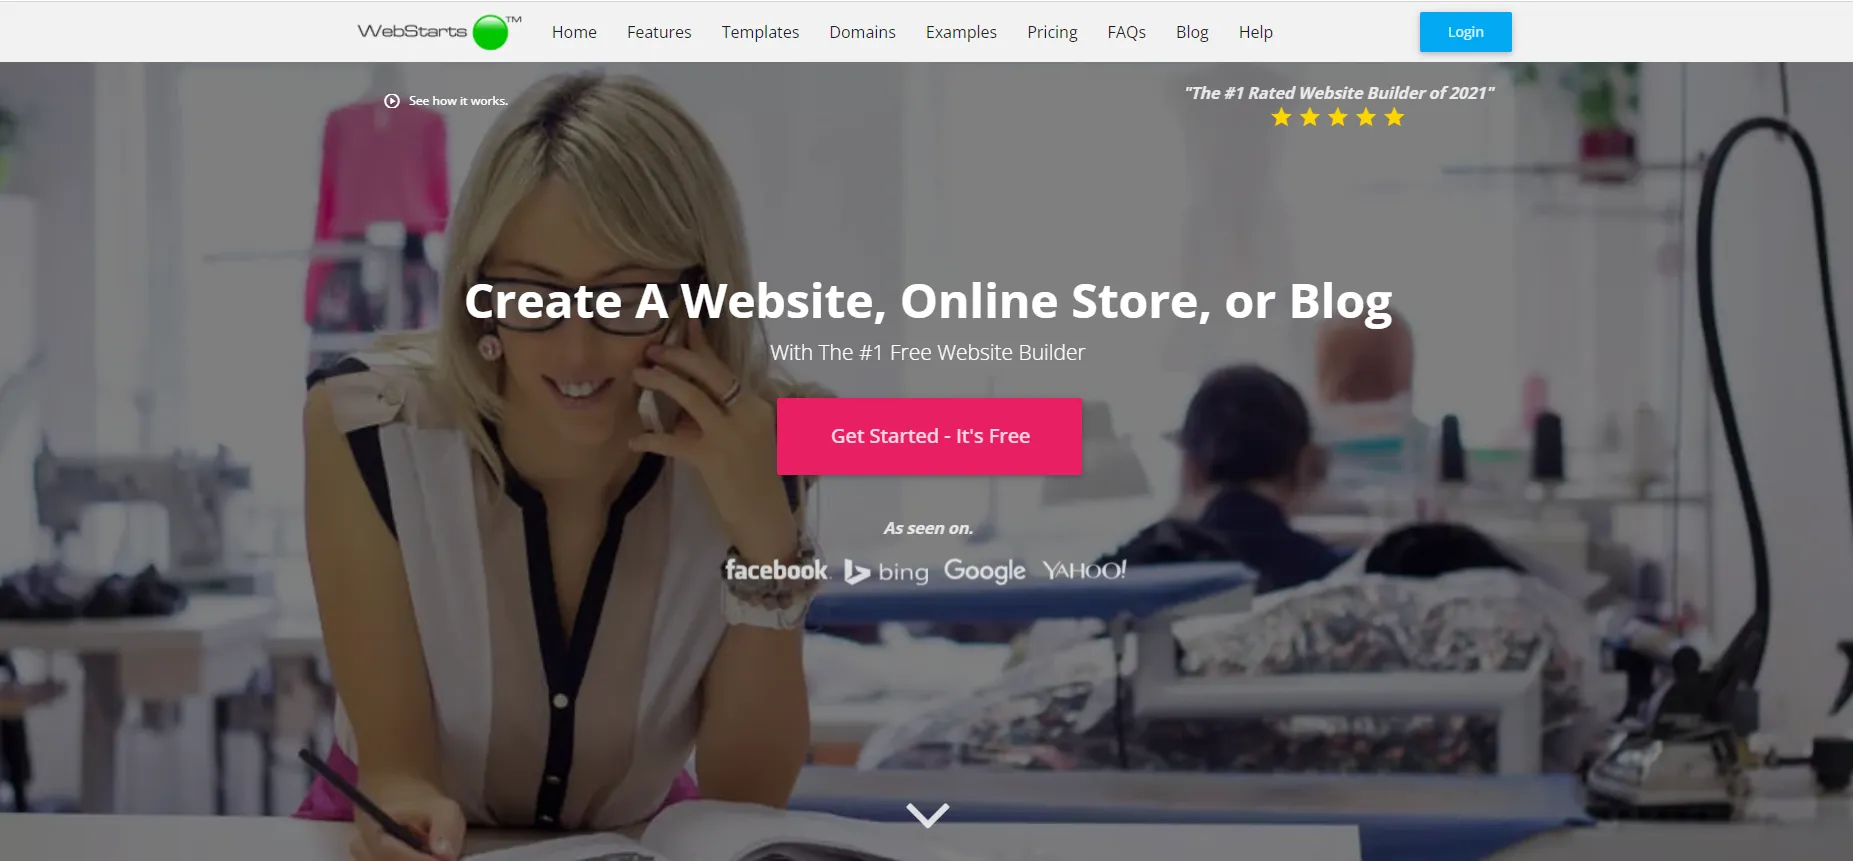 WebStarts - Trình tạo website miễn phí